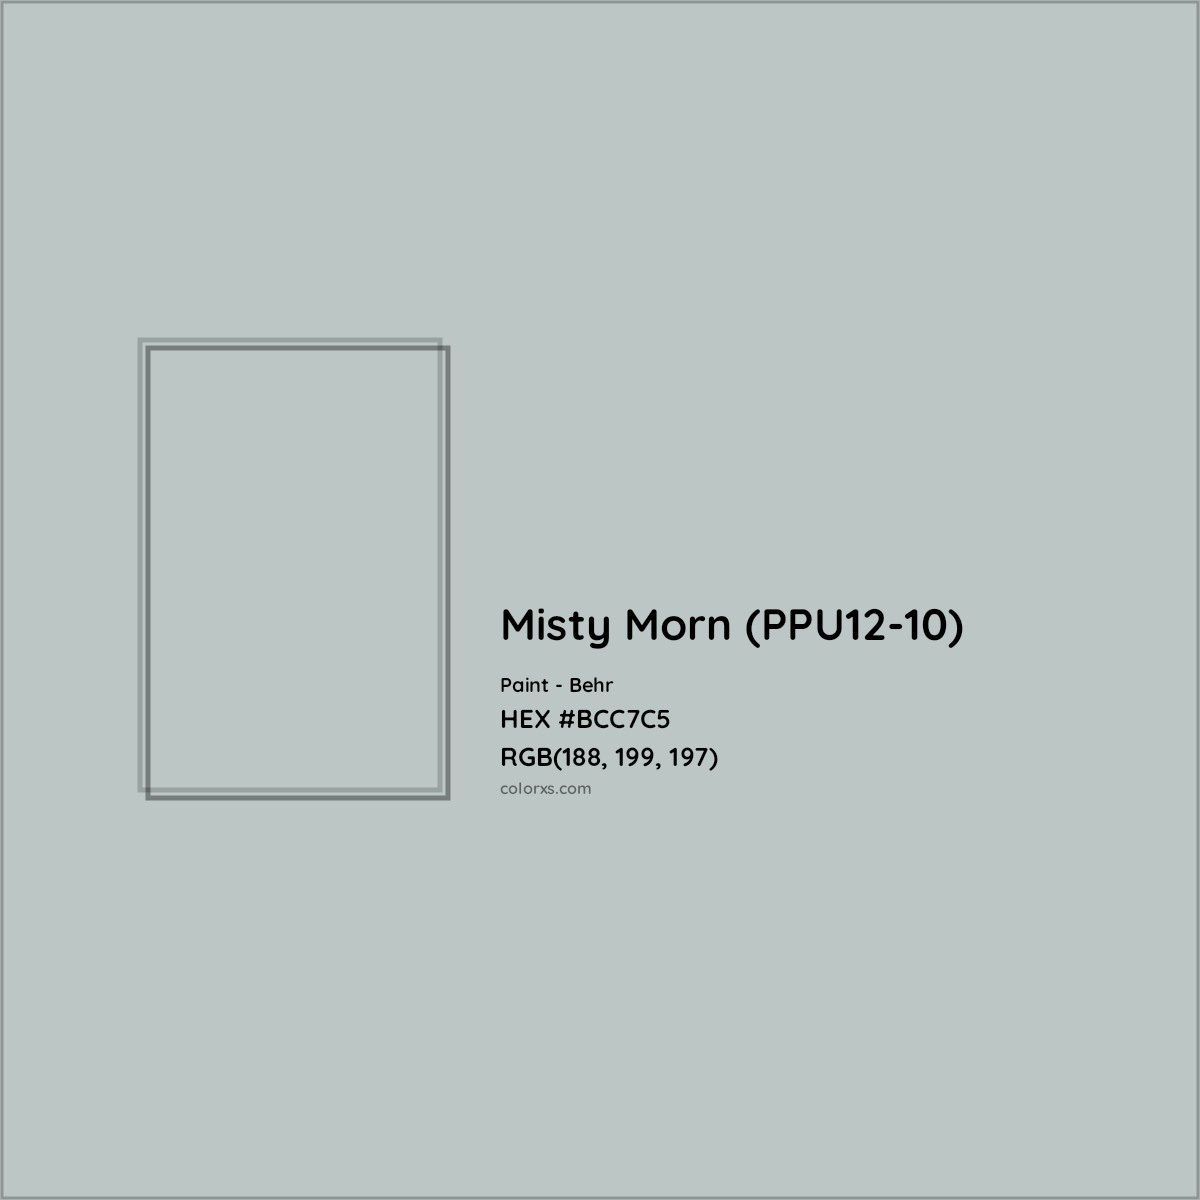 HEX #BCC7C5 Misty Morn (PPU12-10) Paint Behr - Color Code